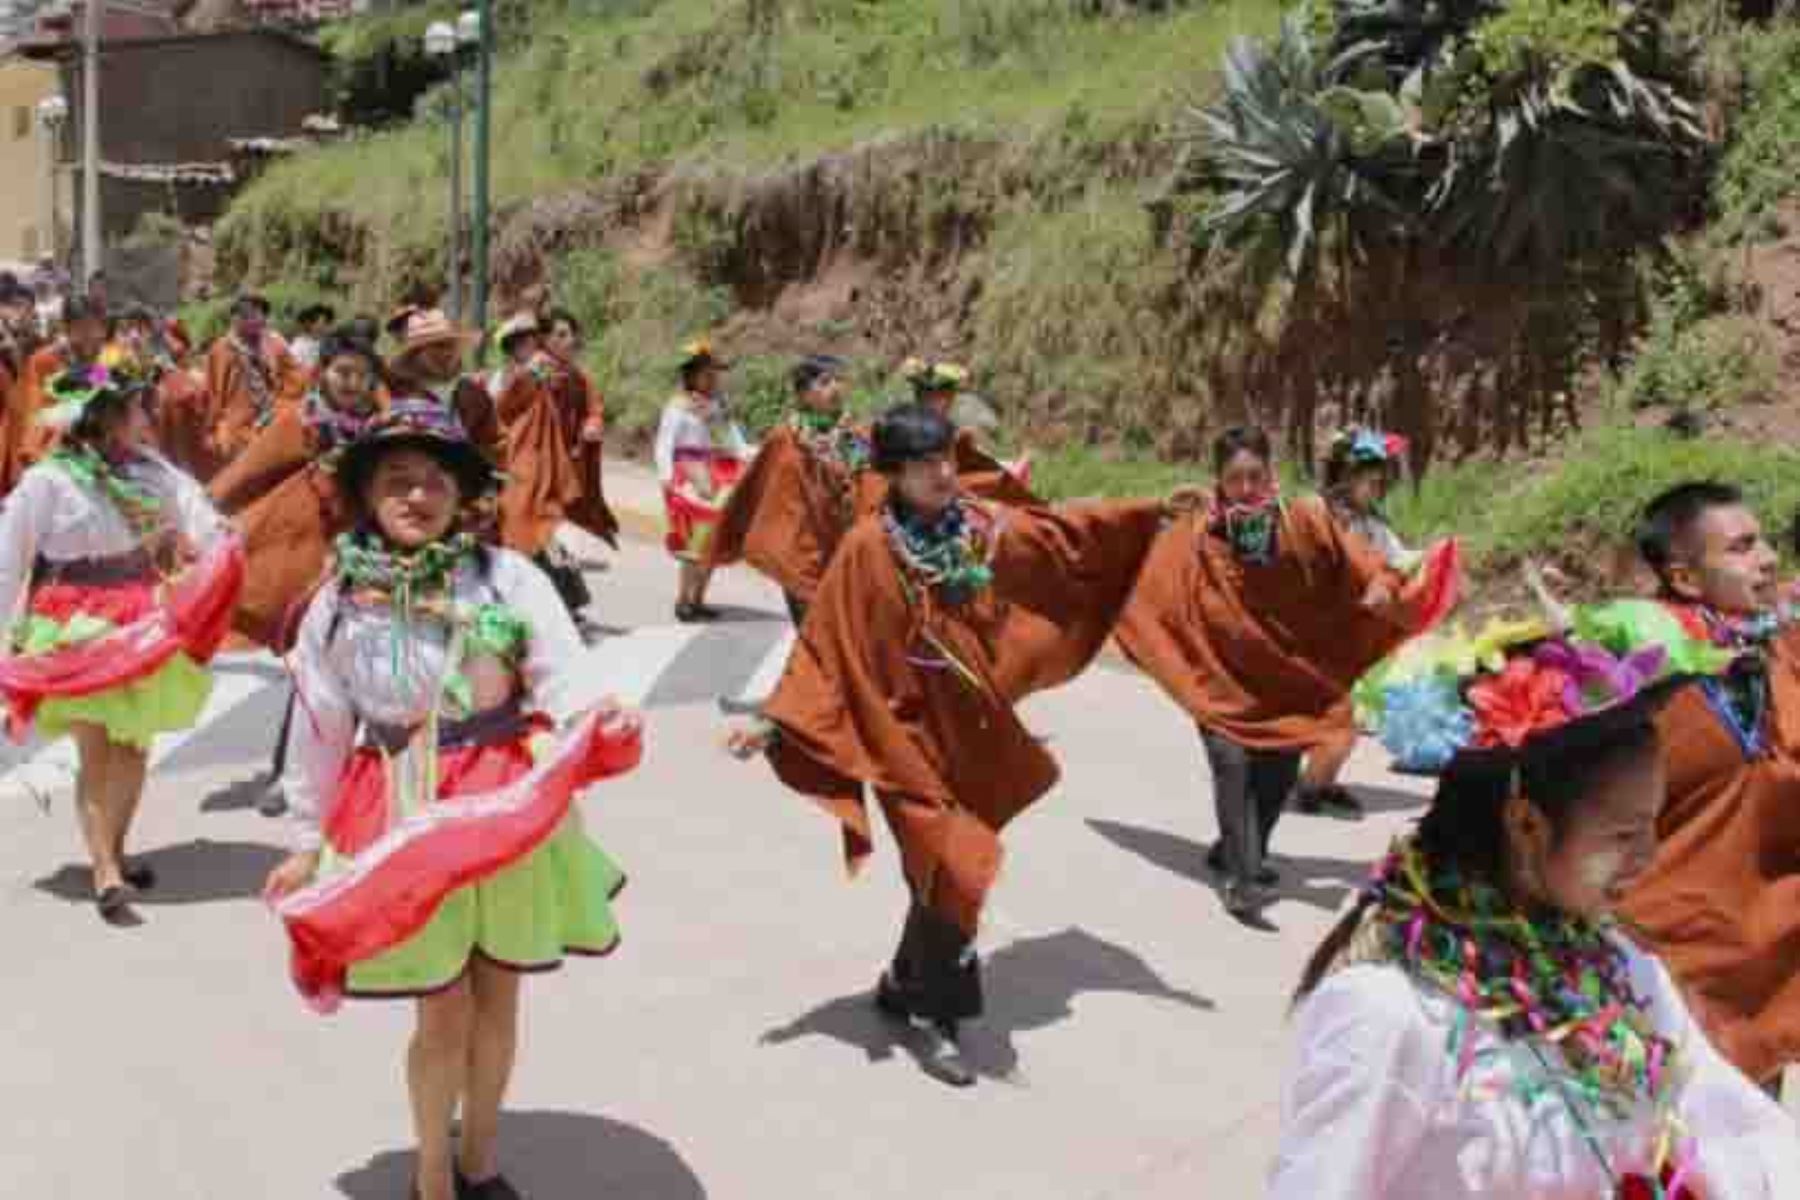 Lircay, capital de la provincia de Angaraes, reconocida como la “Ciudad de las Rosas y los Guindos”, se convirtió en la capital del gran Carnaval Lirqueño, que congregó a miles de visitantes de todo el Perú que llegaron para vivir la alegría e intensidad del colorido, las danzas y la música emblemáticas de esta bella localidad andina.